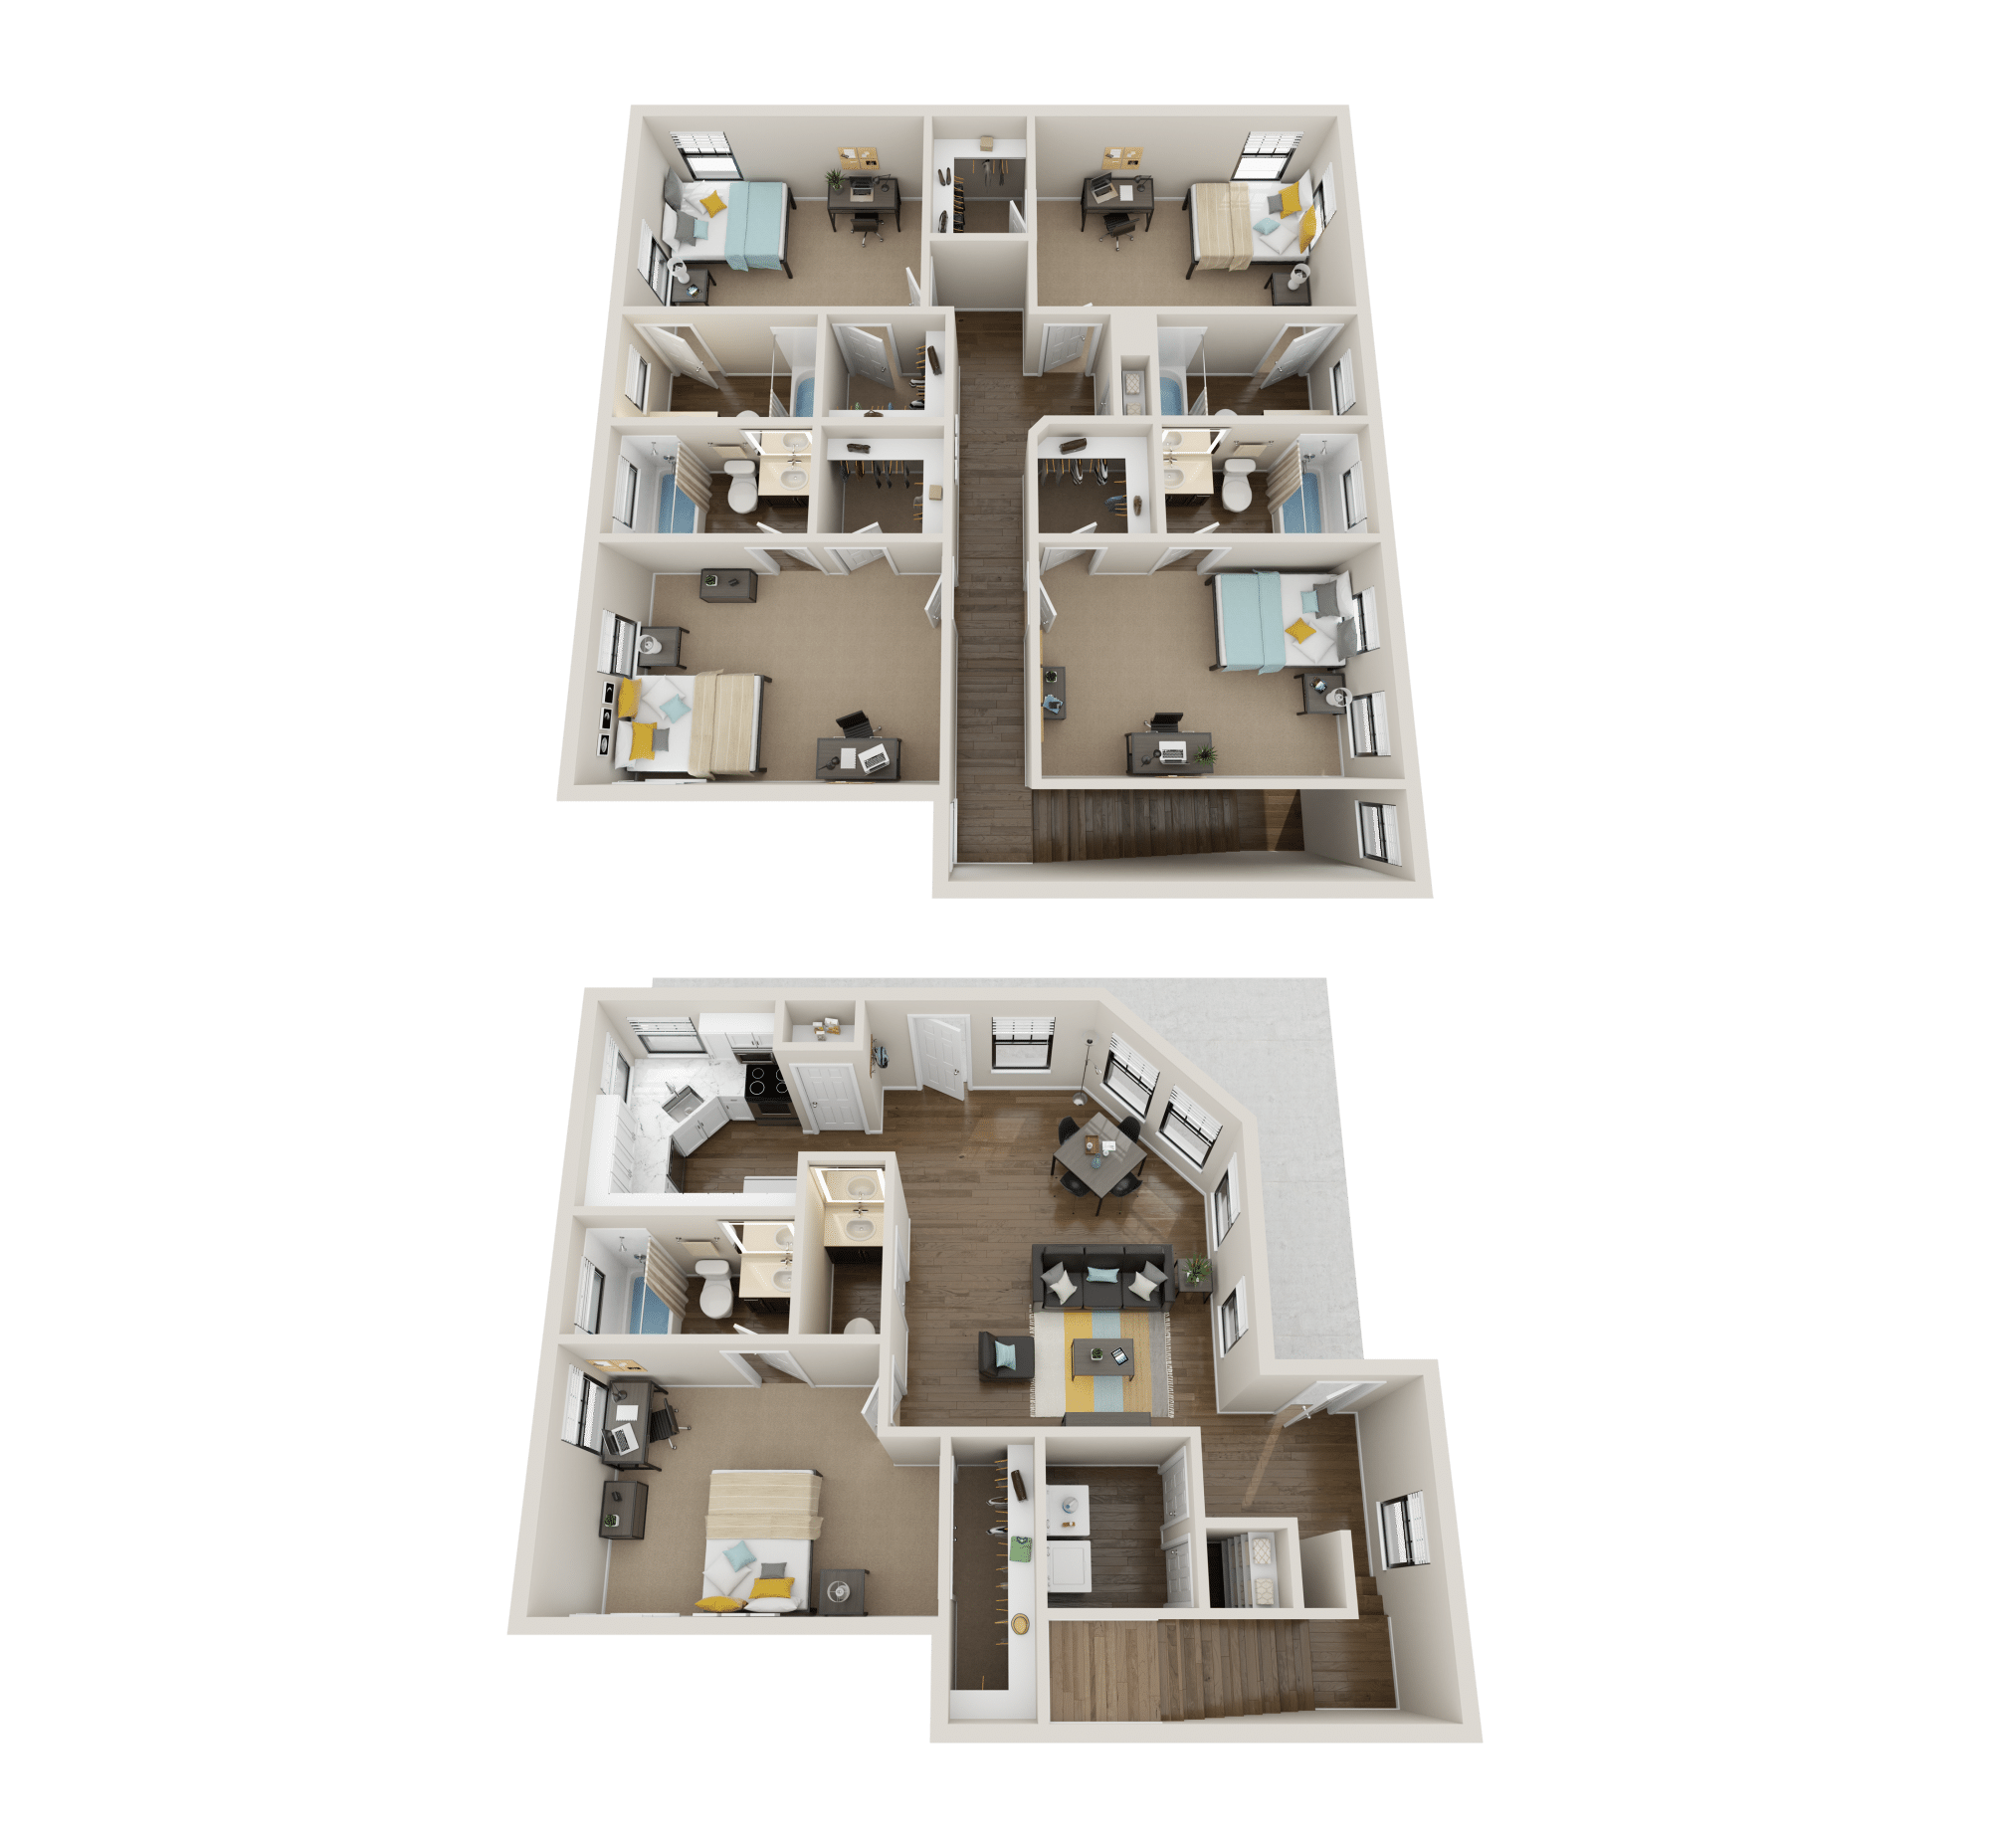 5x5.5 corner premium floor plan collective at clemson off campus apartments